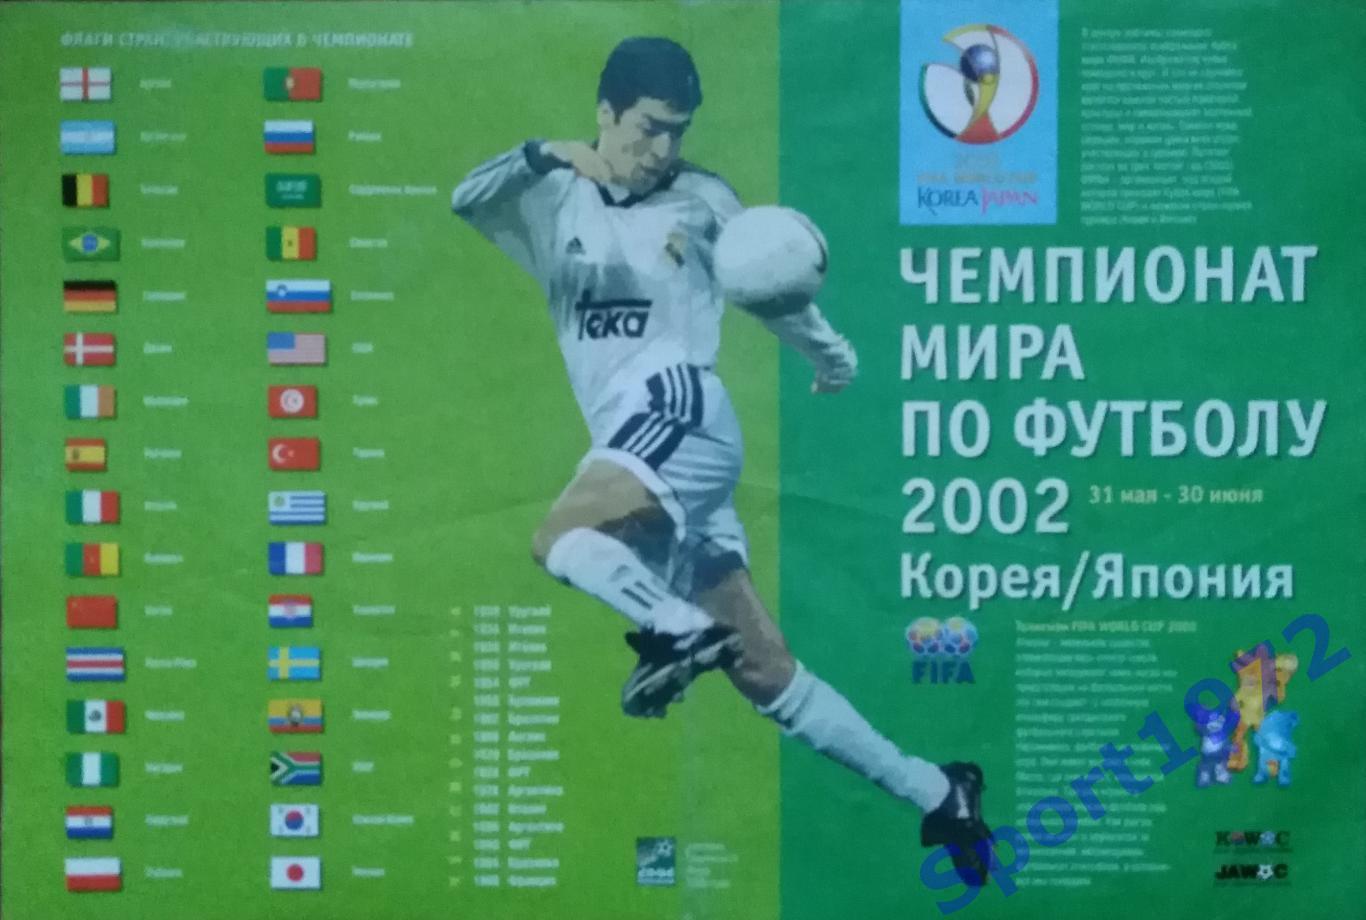 Чемпионат мира по футболу 2002. Корея/Япония. Календарь игр.